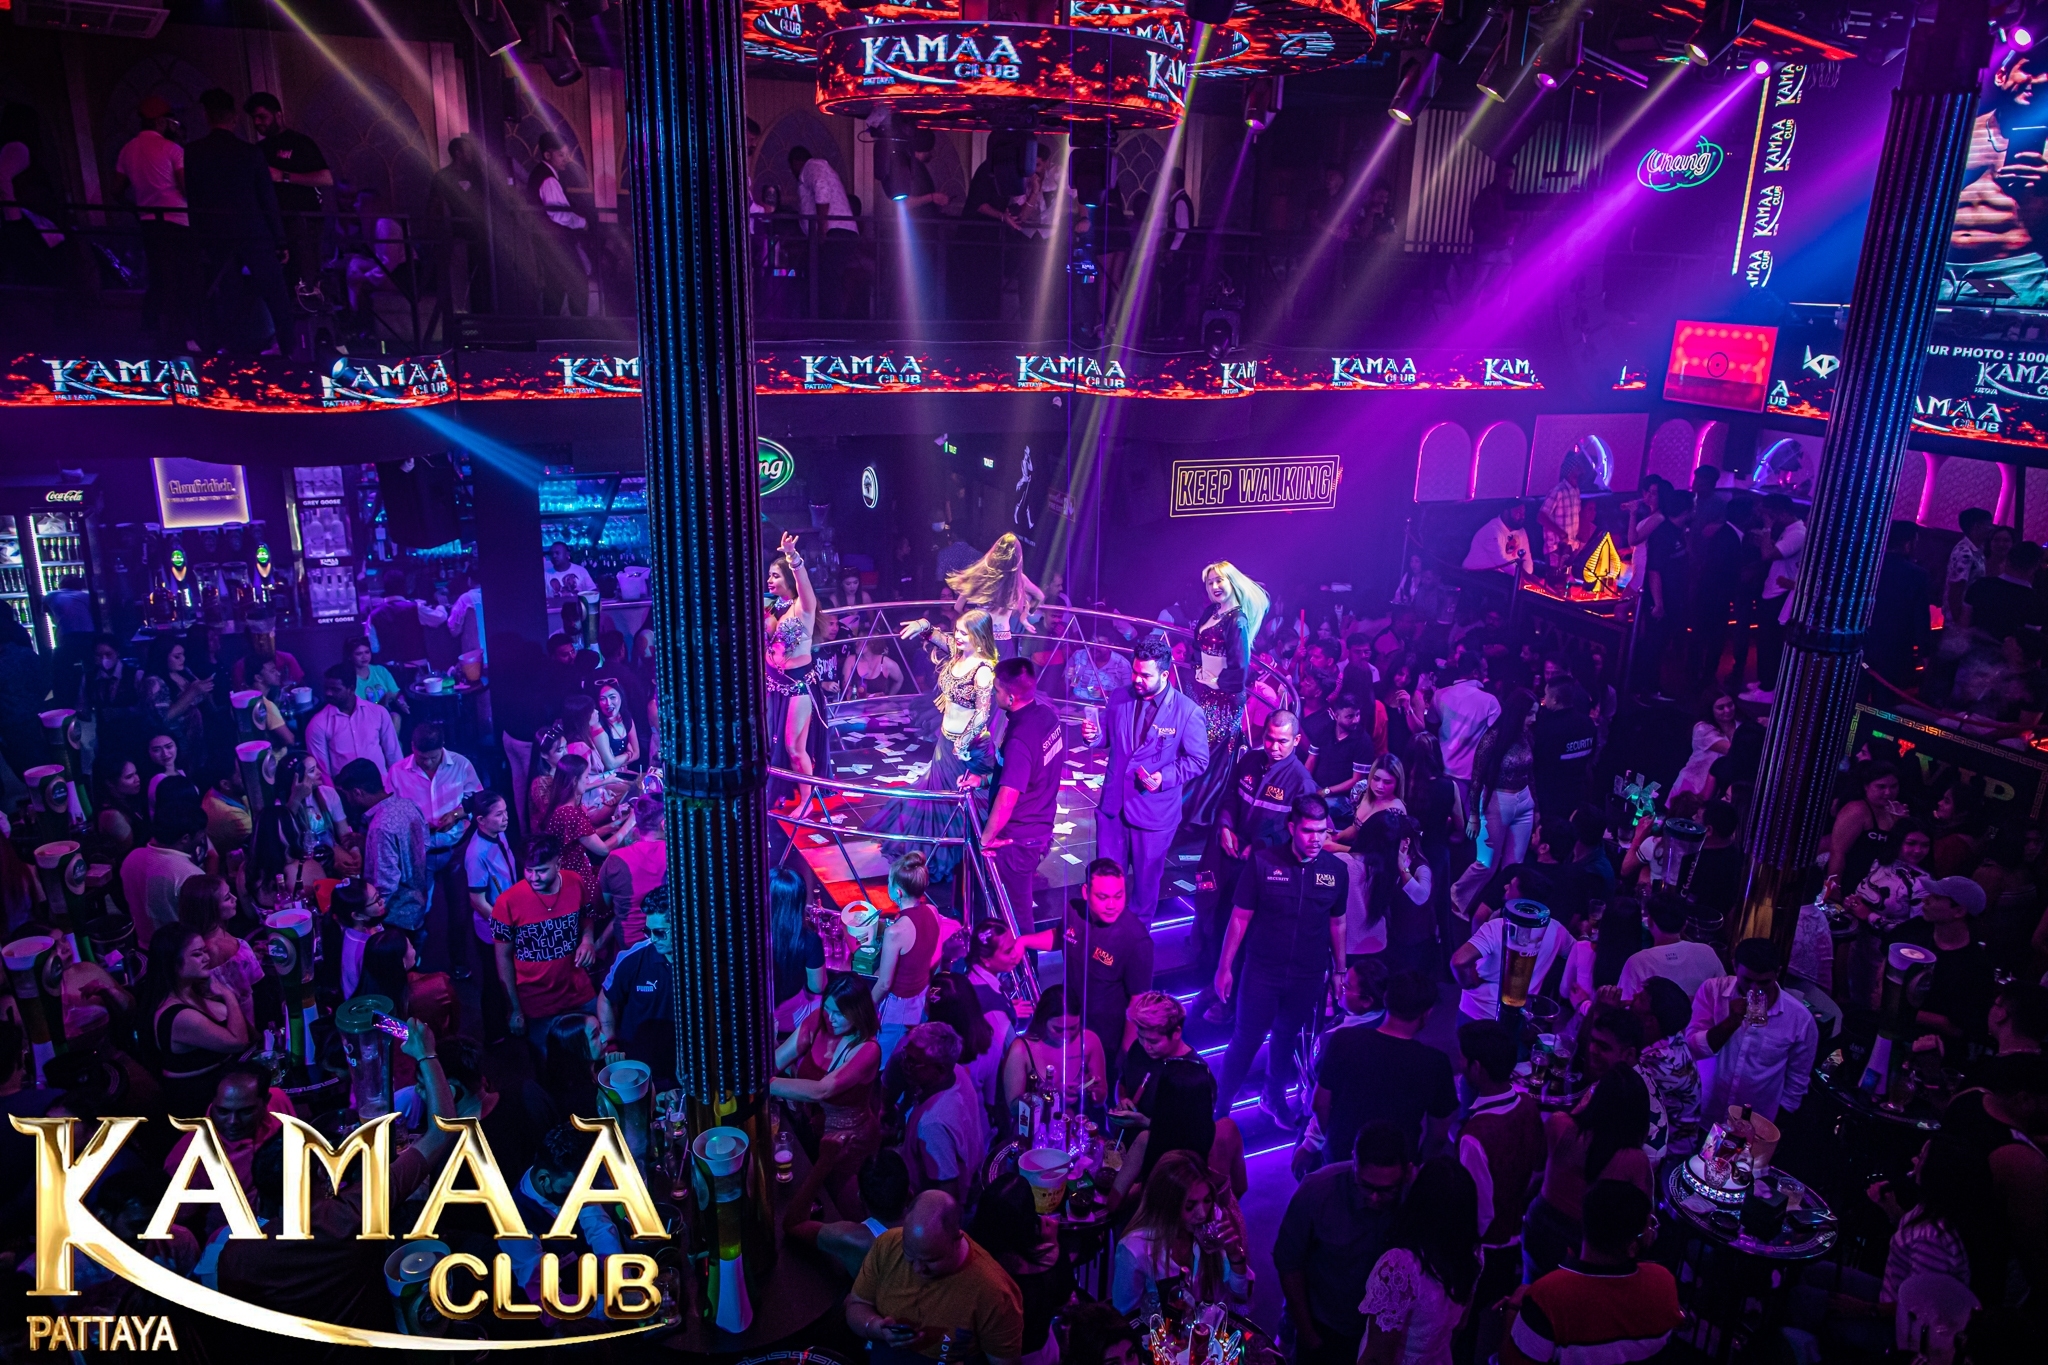 Kamaa Club Pattaya